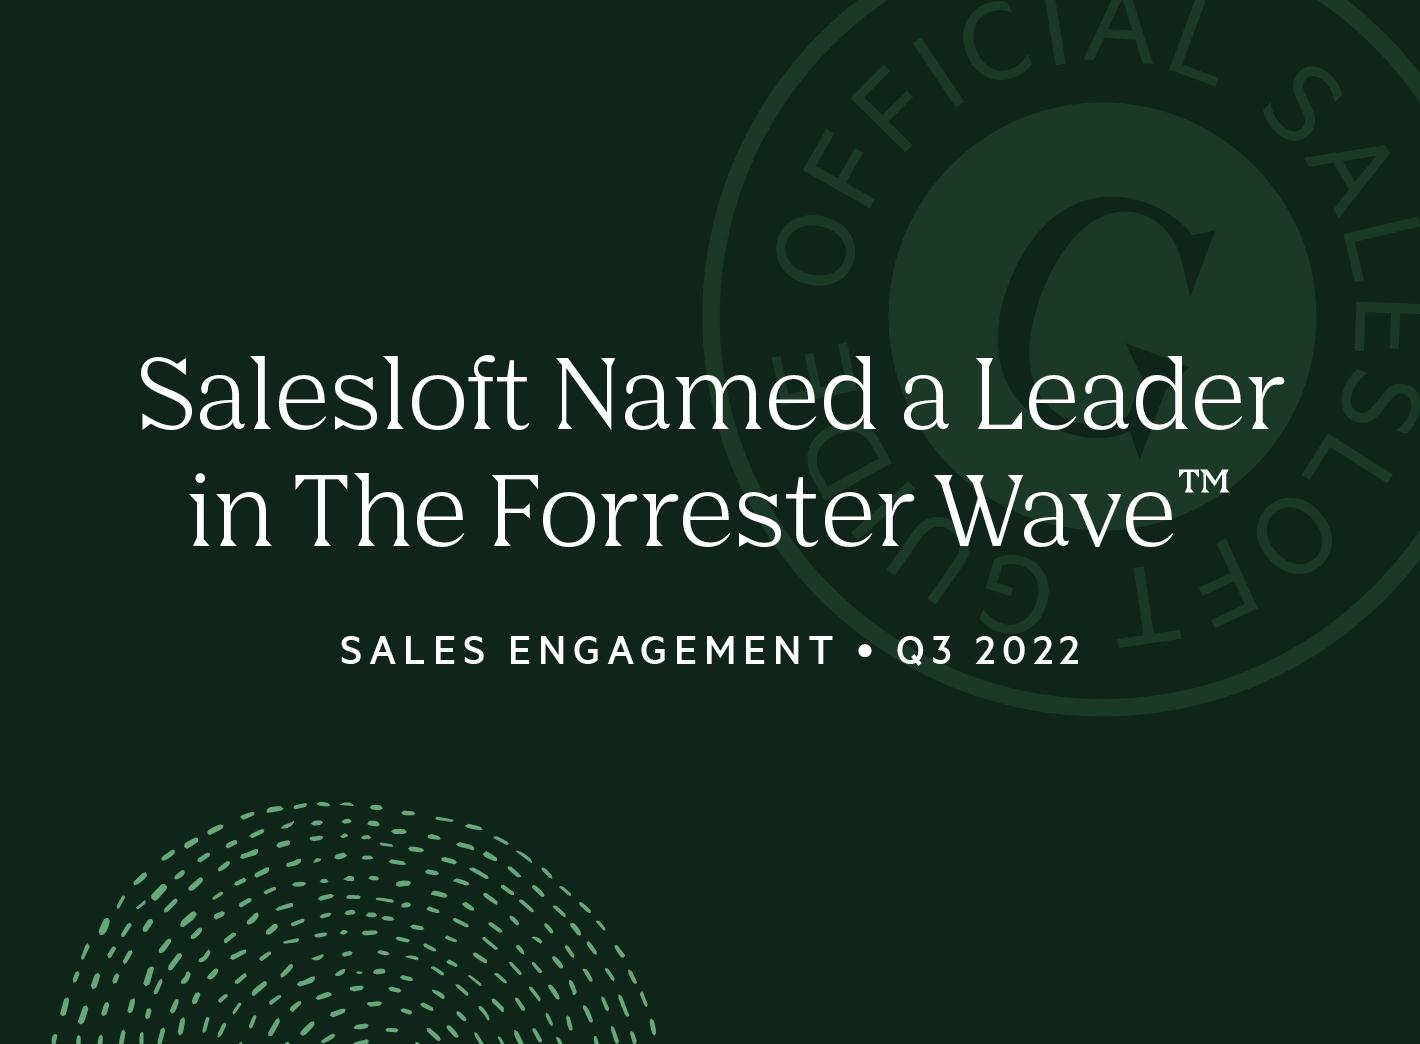 "Salesloft named a leader in the forrester wave"